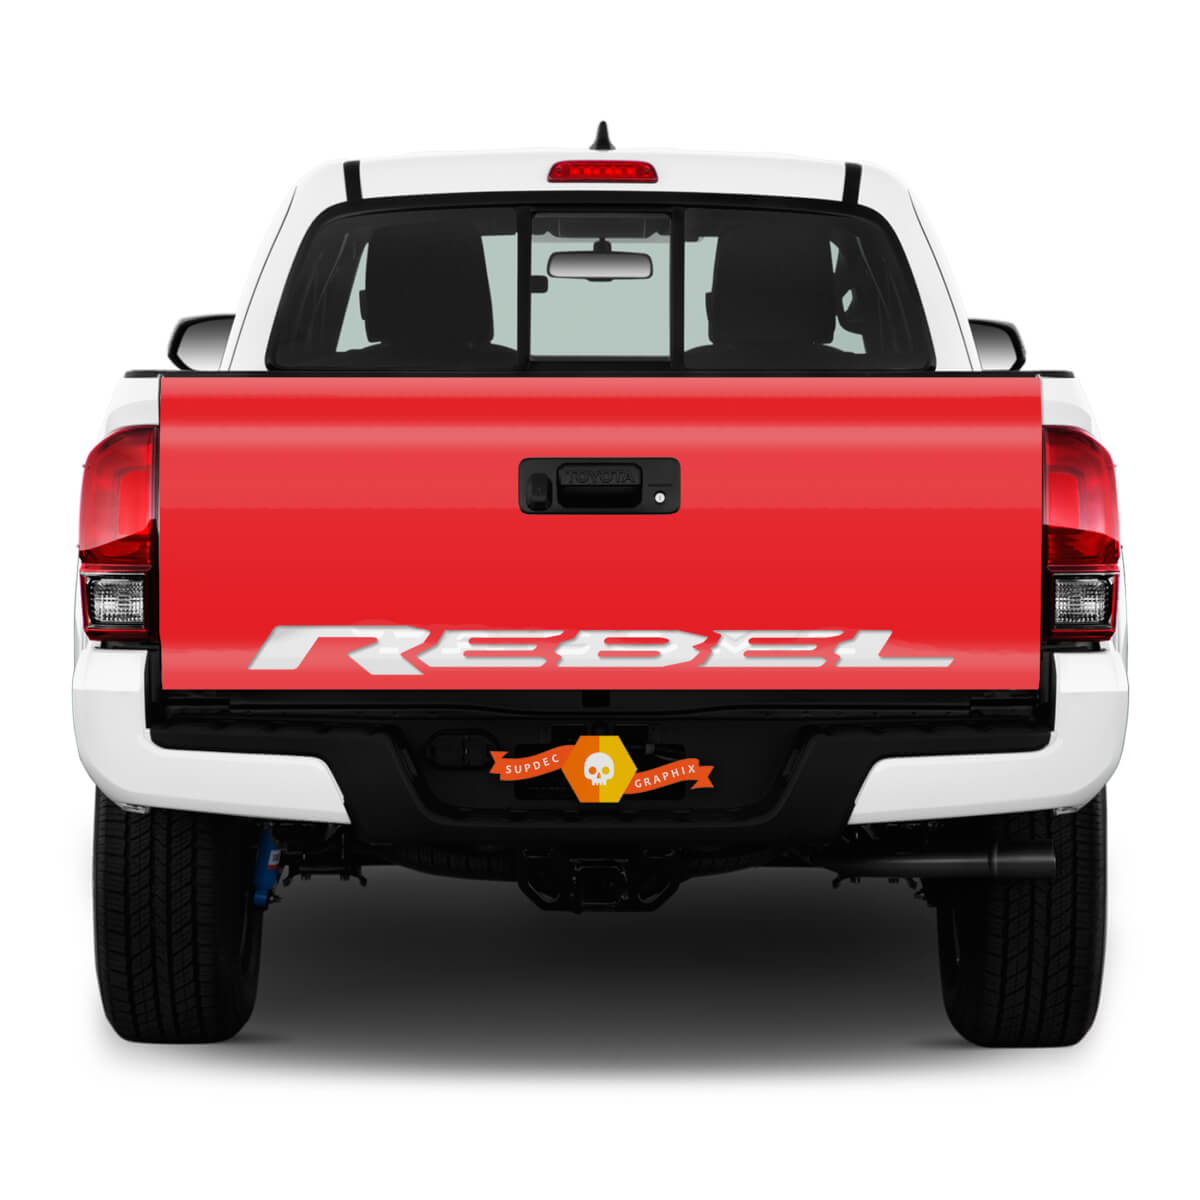 Dodge Ram Rebel Splash RAM DT Modell 2019 Heckklappe Aufkleber Aufkleber Vinyl Aufkleber Grafikwagen